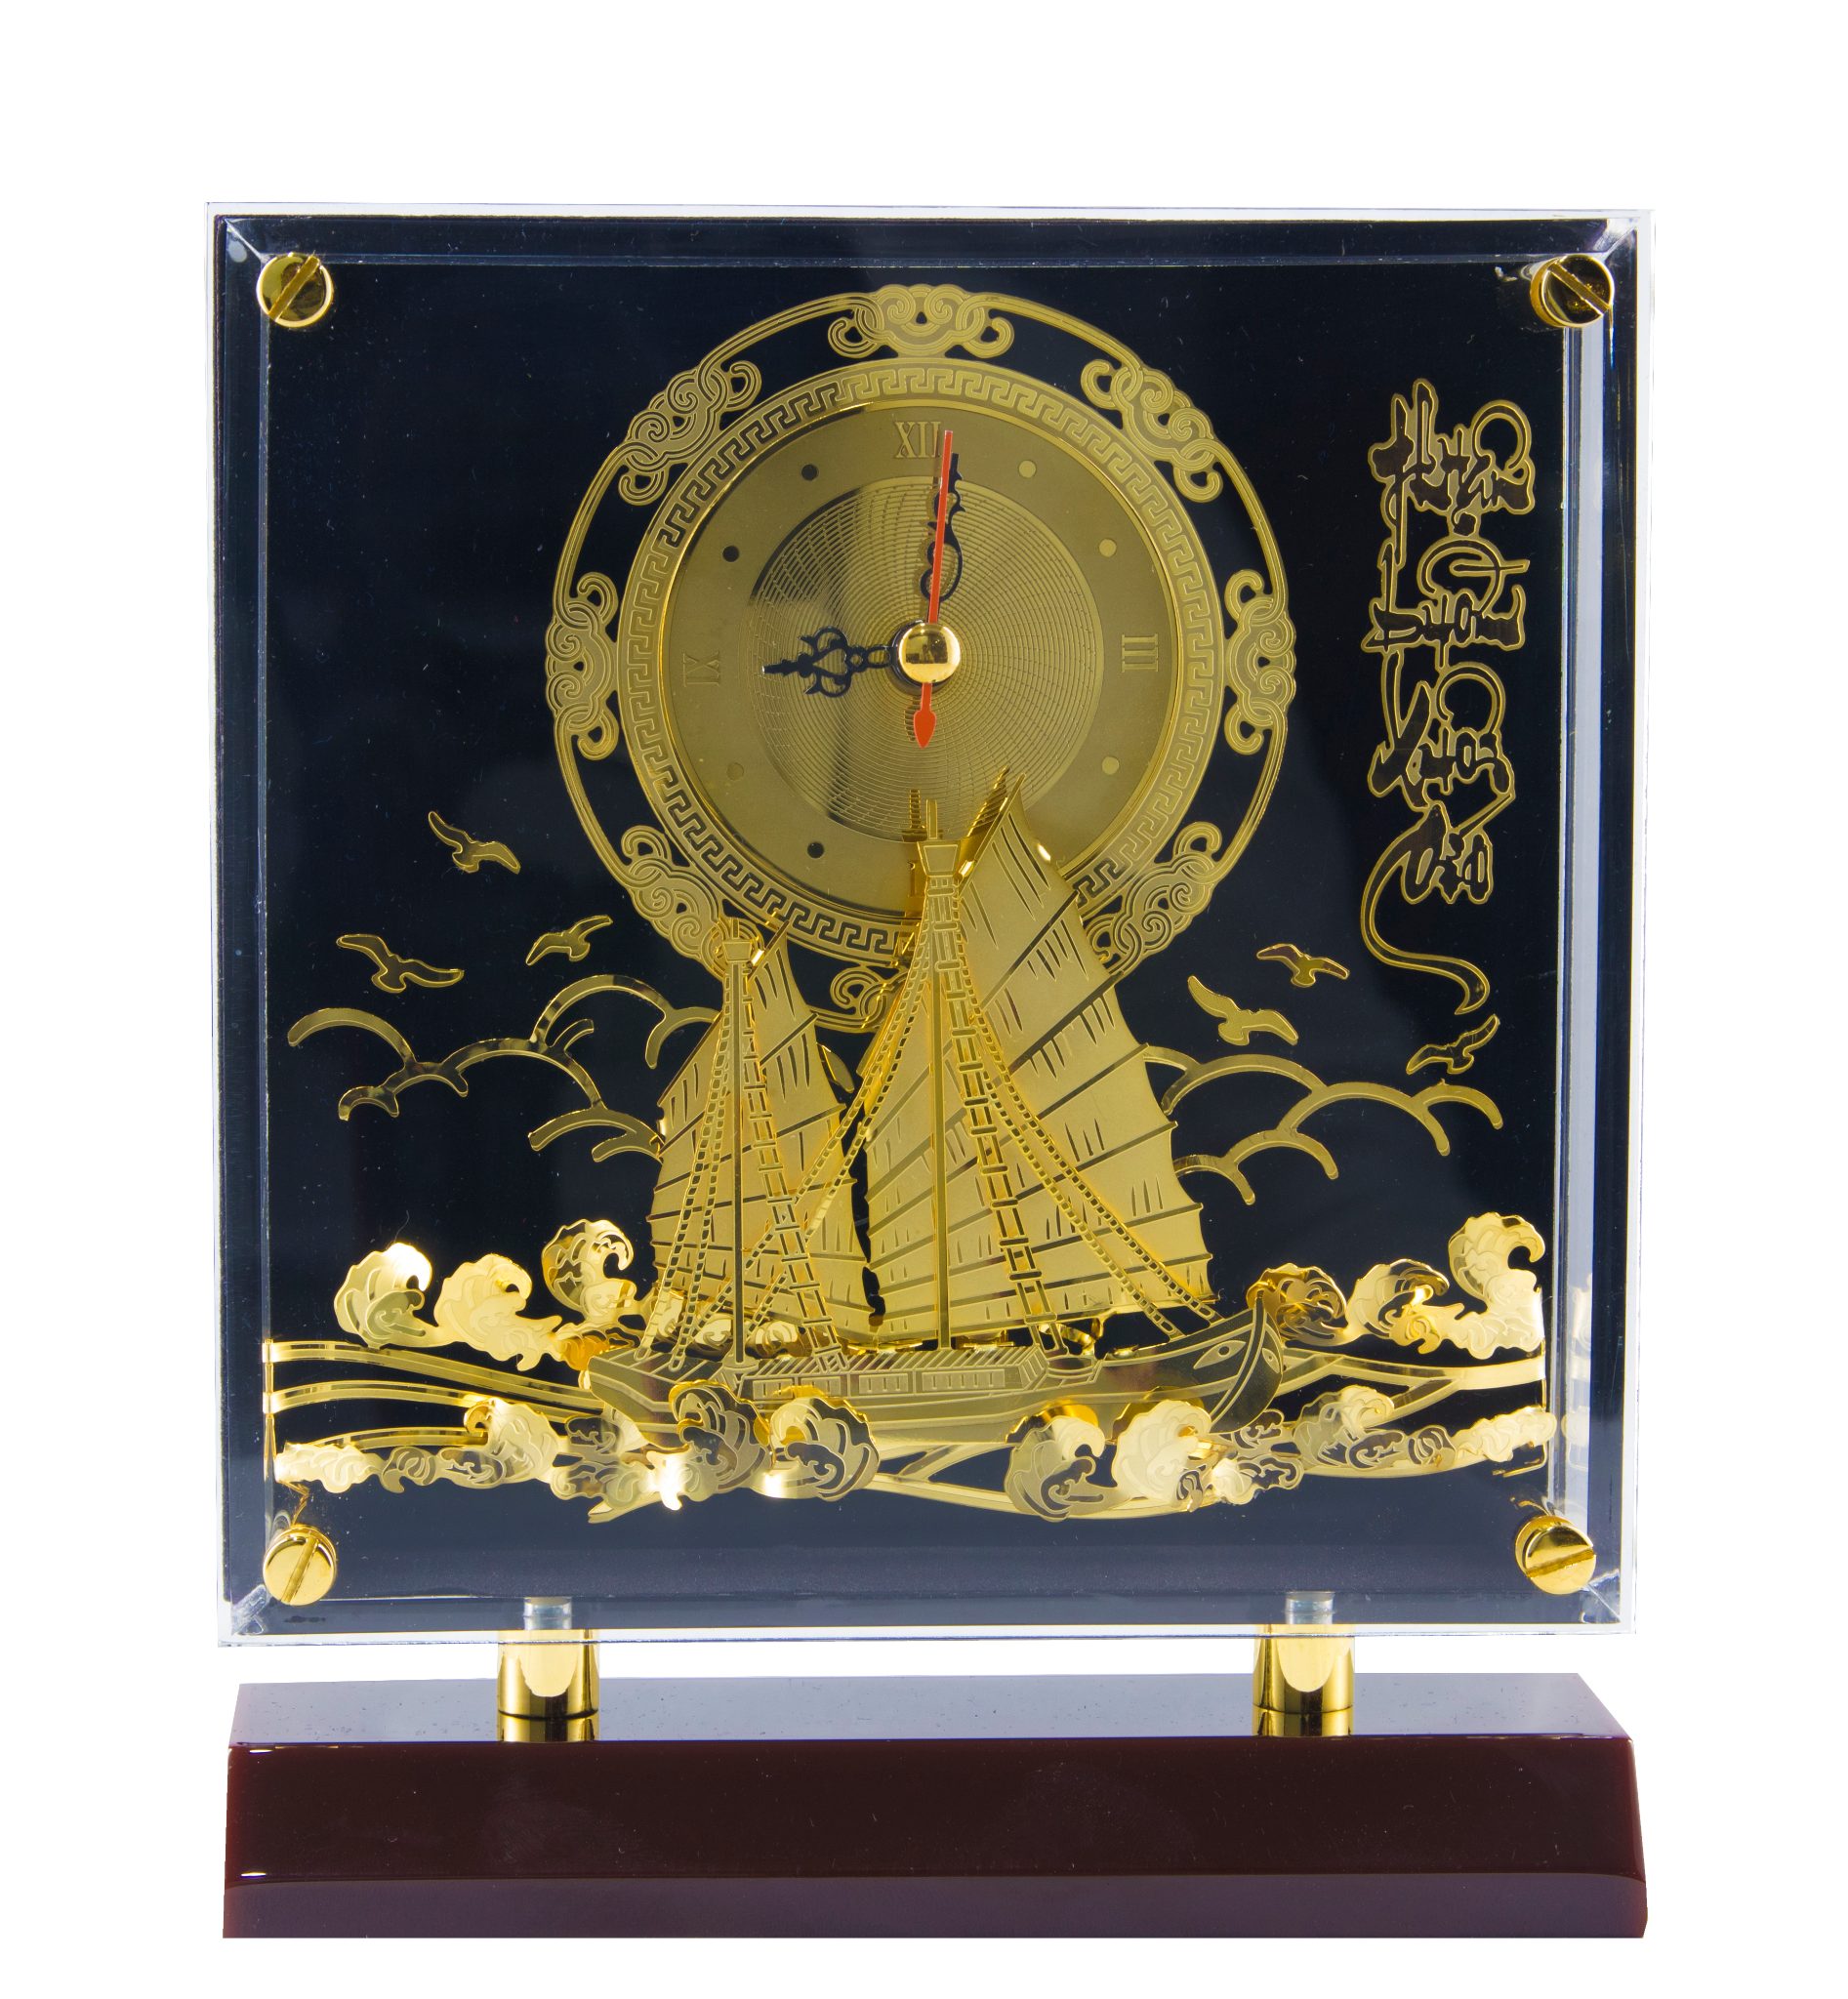  Tranh mica đồng hồ Thuận Buồm Xuôi Gió 19x16cm, đồng mạ vàng 